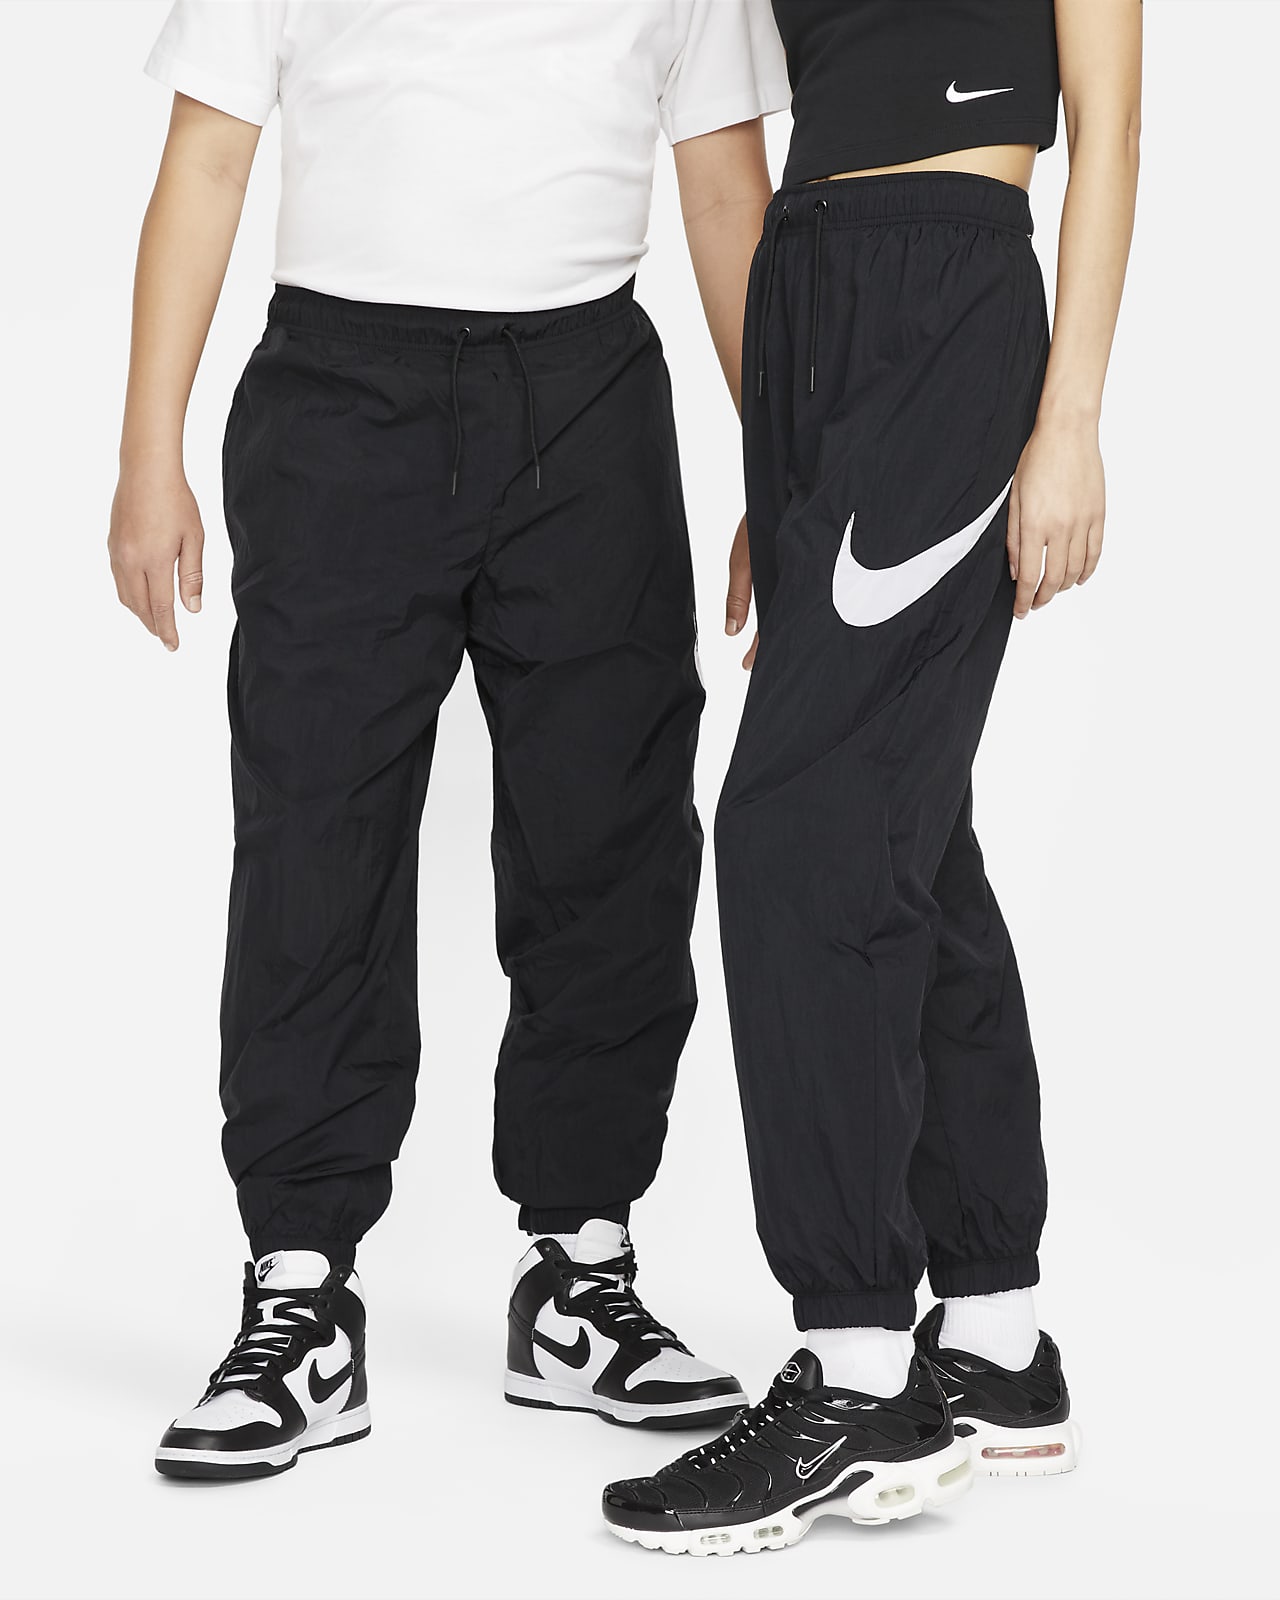 Γυναικείο παντελόνι μεσαίου ύψους Nike Sportswear Essential